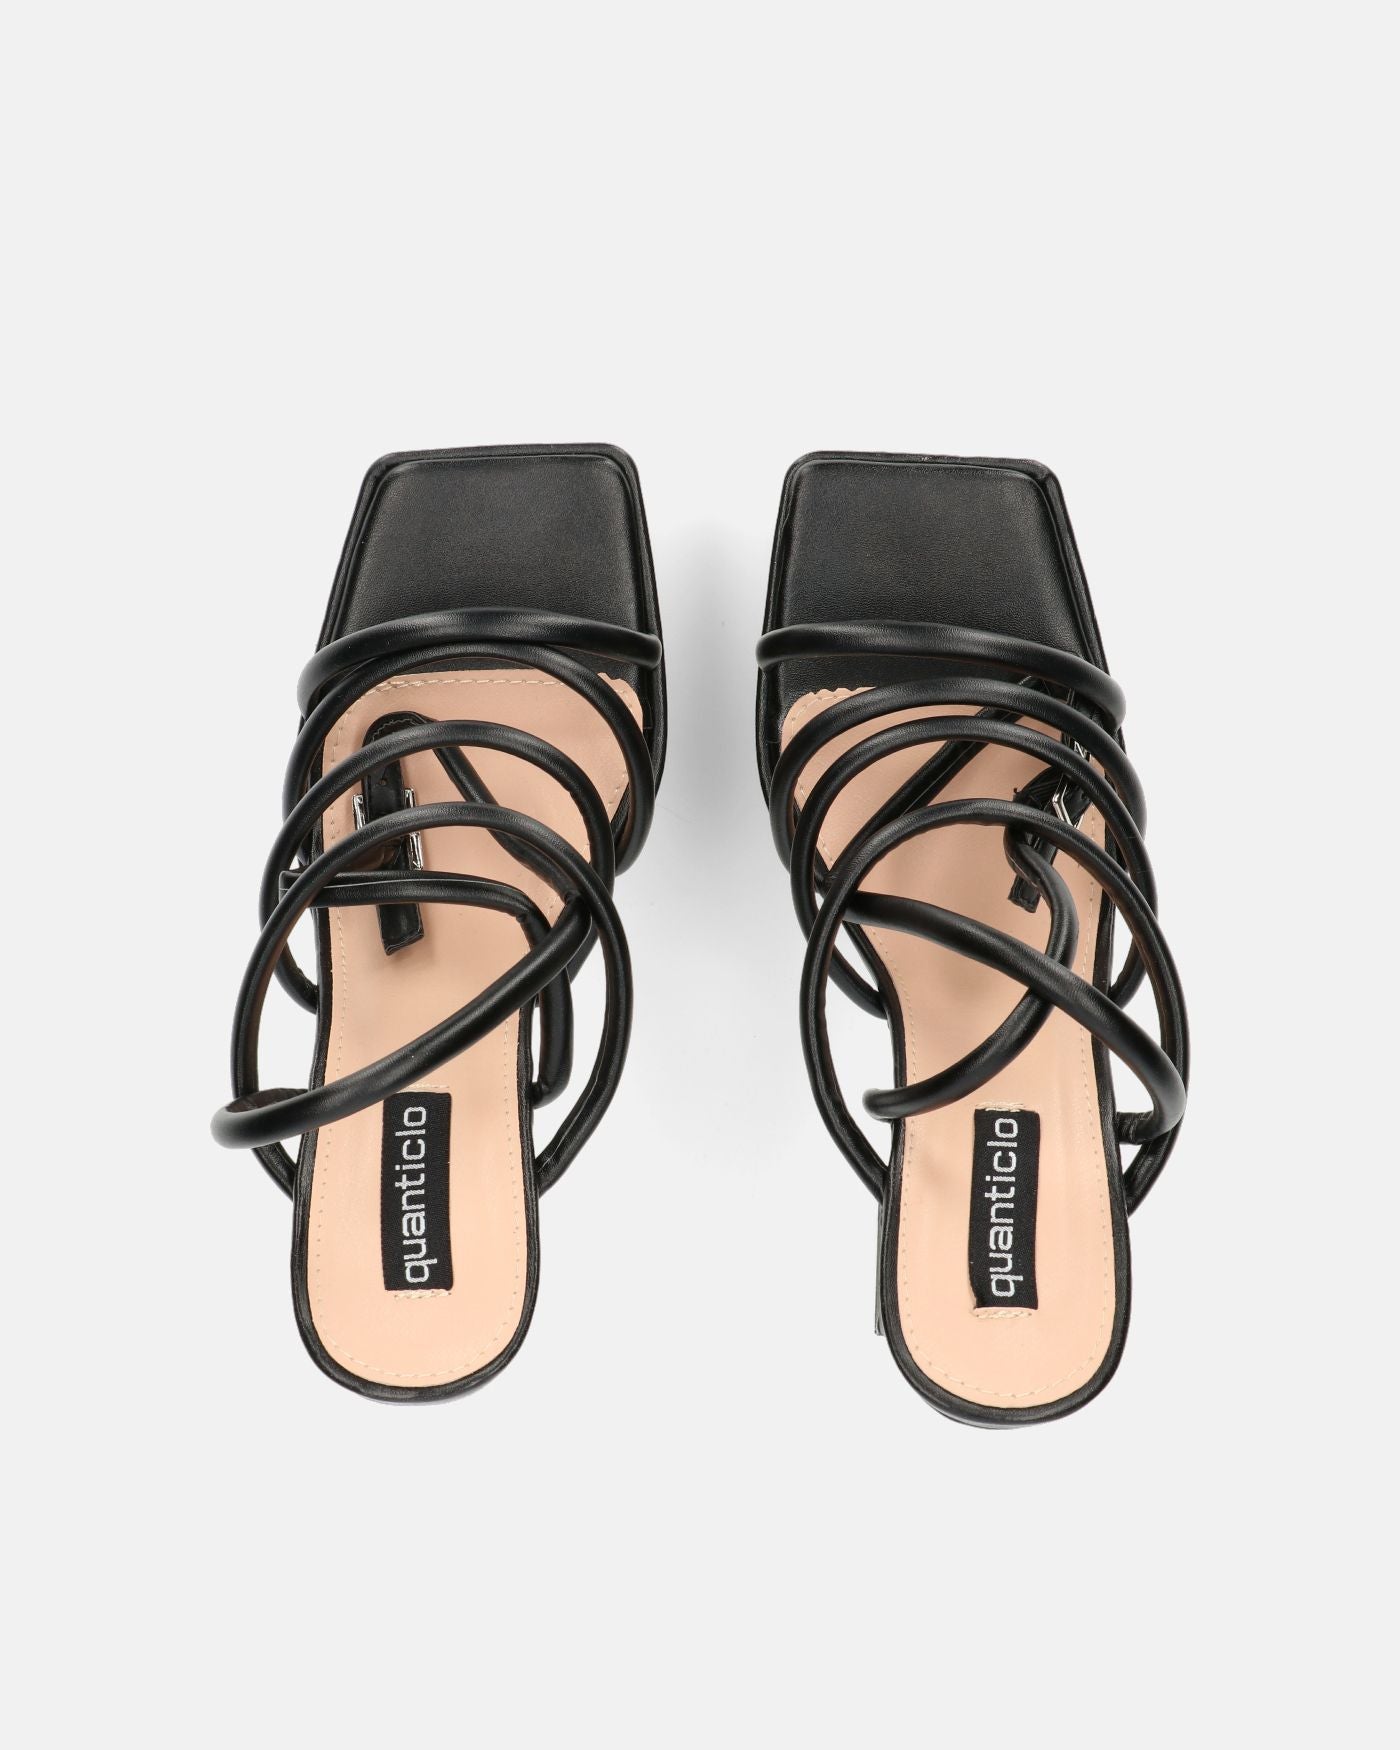 MADELYN - black lycra sandals with gems